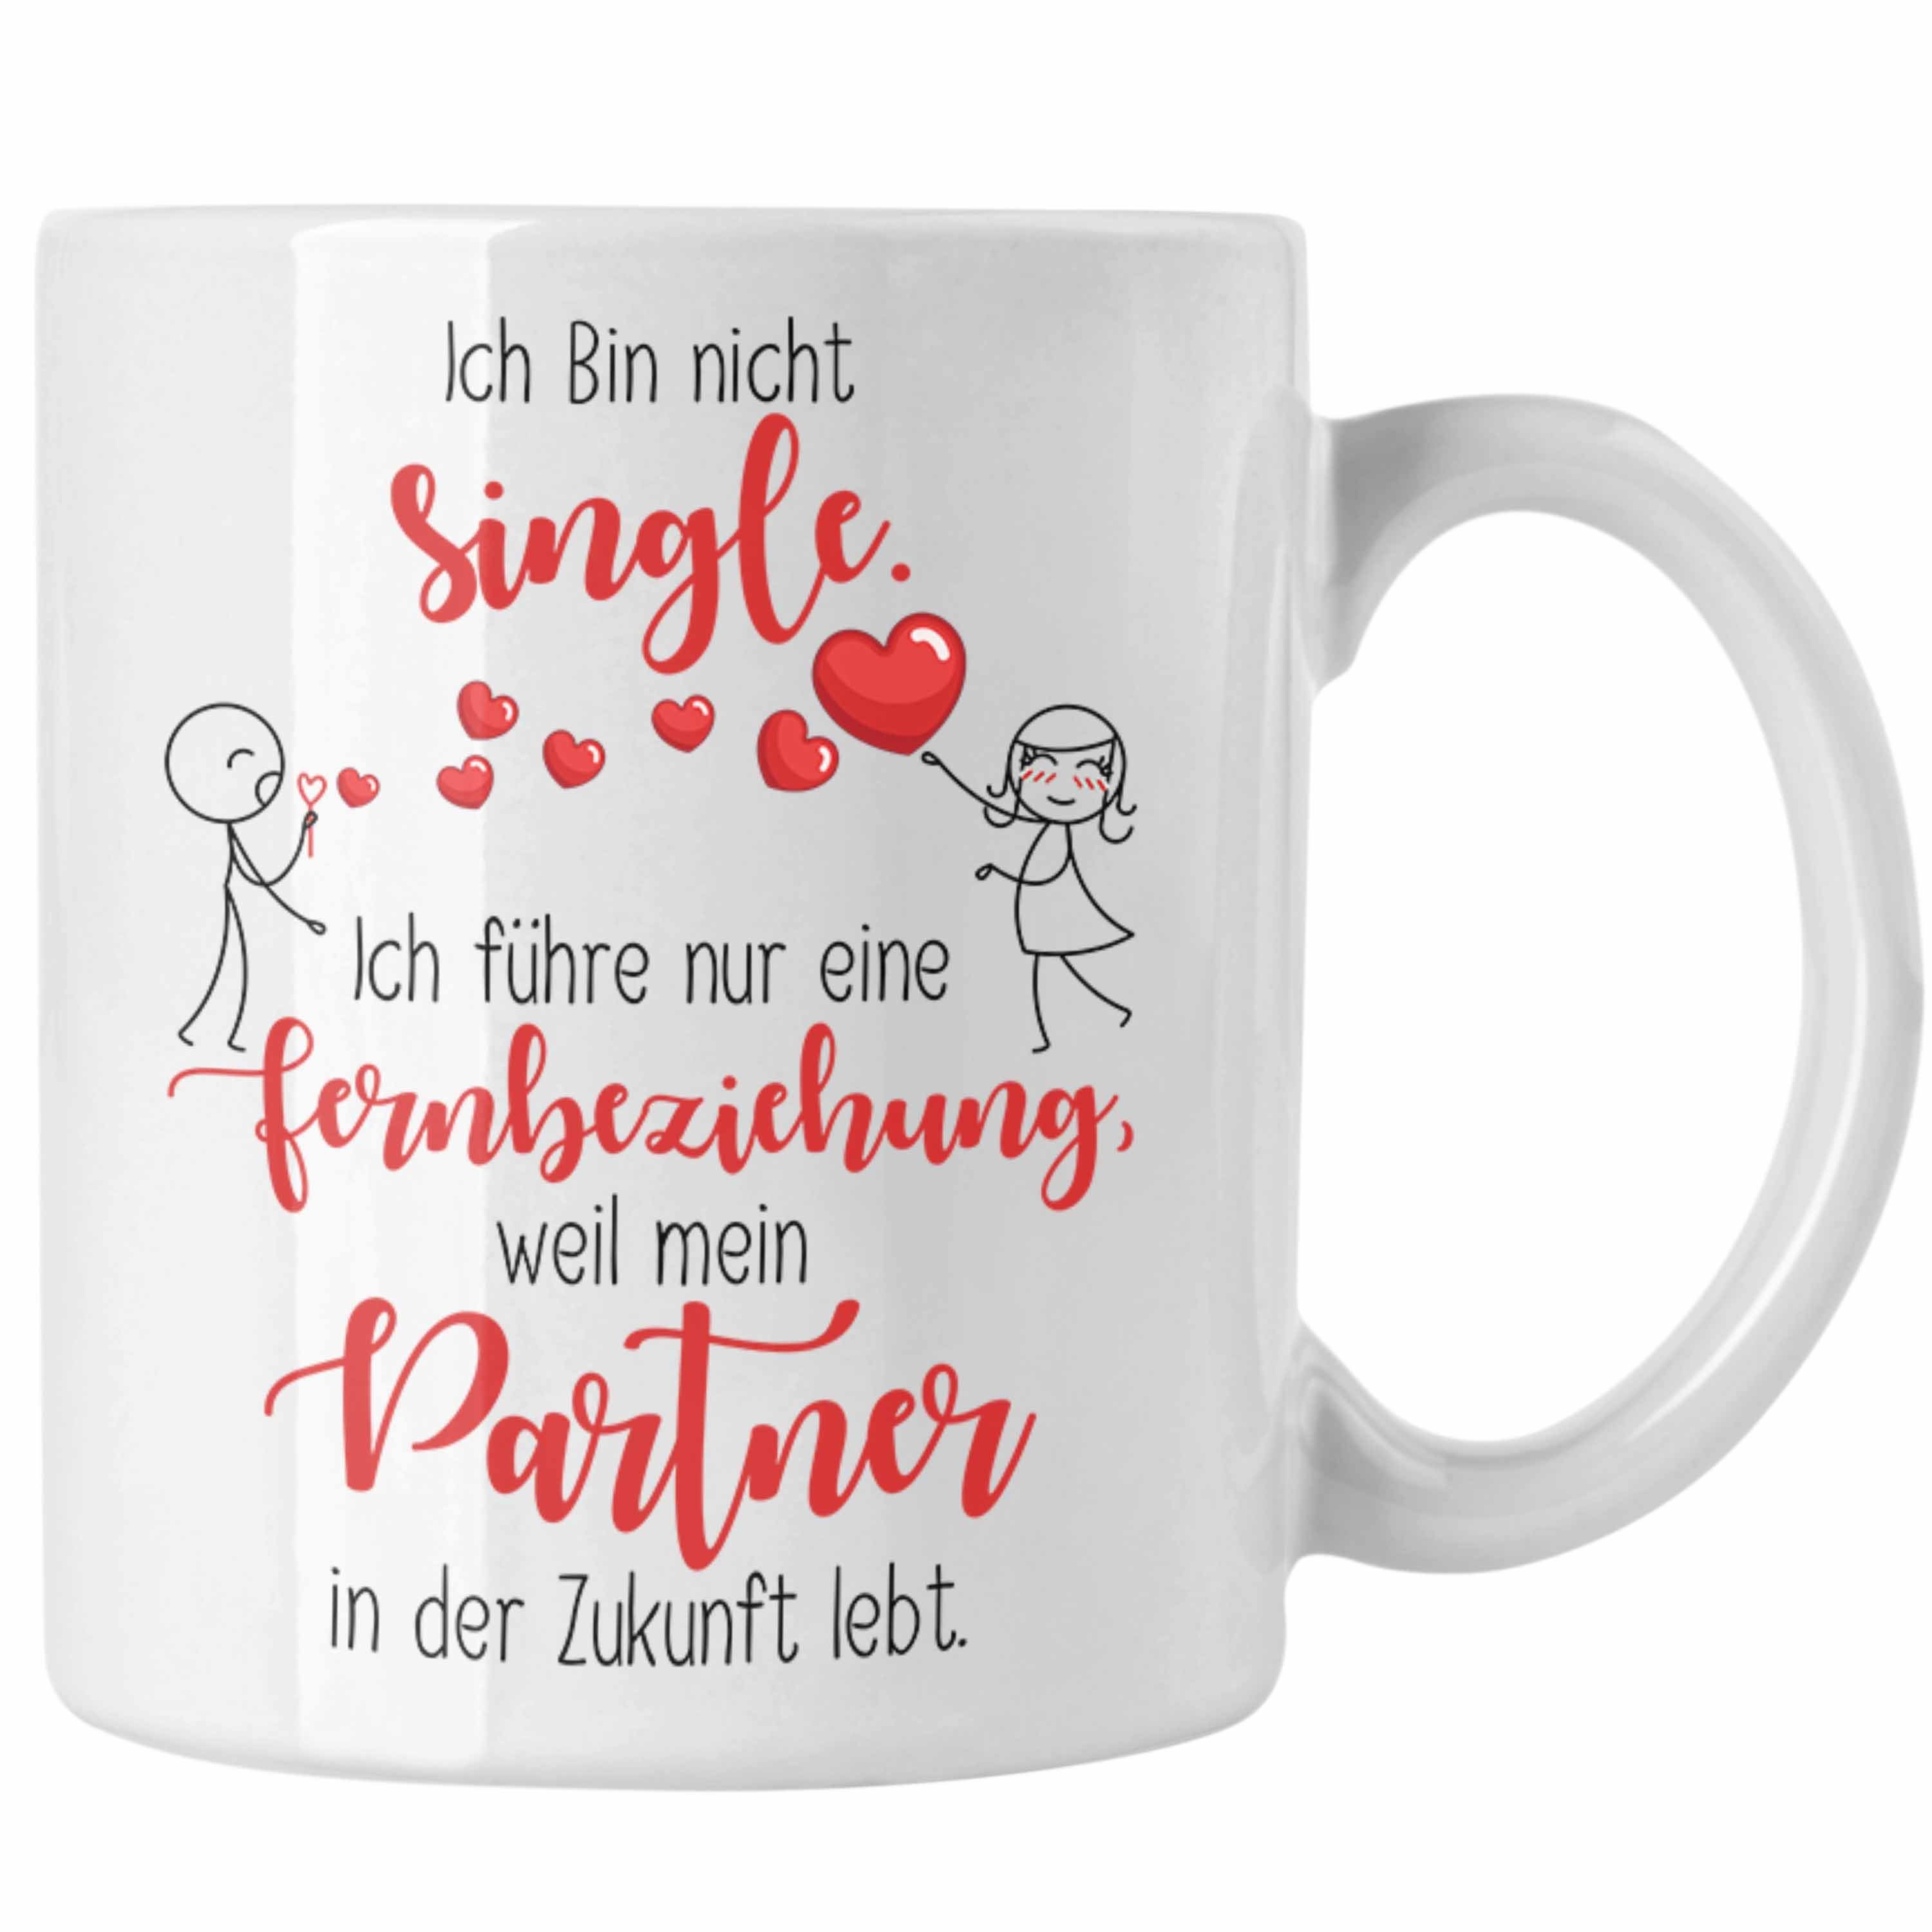 Trendation Tasse Geschen der Partner Single in Weiss Tasse Geschenk Fernbeziehung Zukunft mit